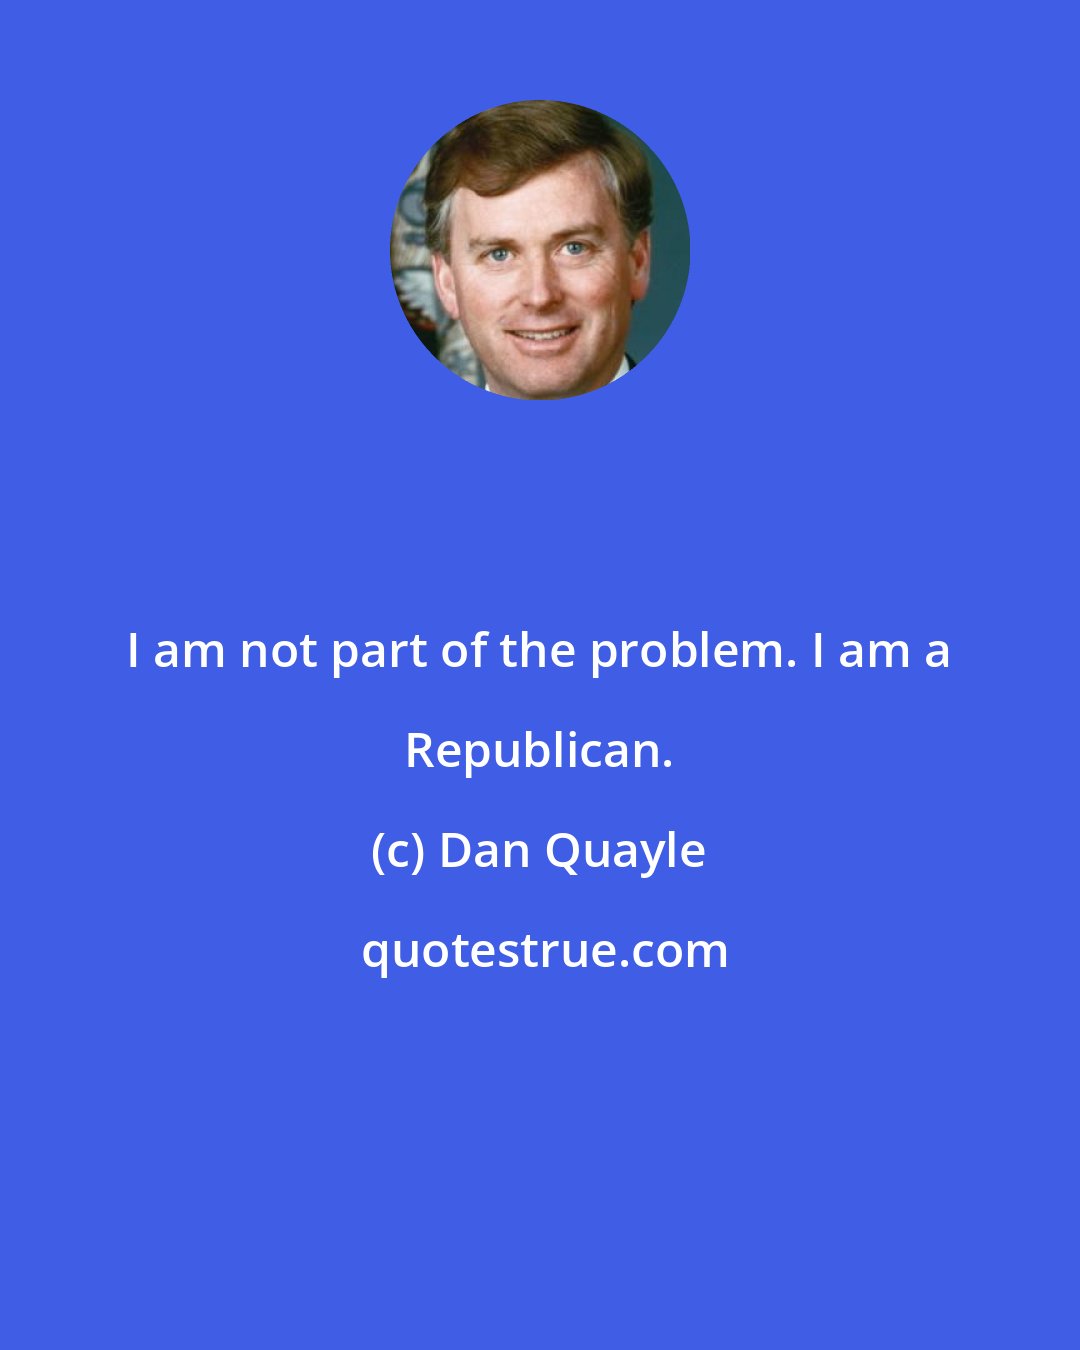 Dan Quayle: I am not part of the problem. I am a Republican.